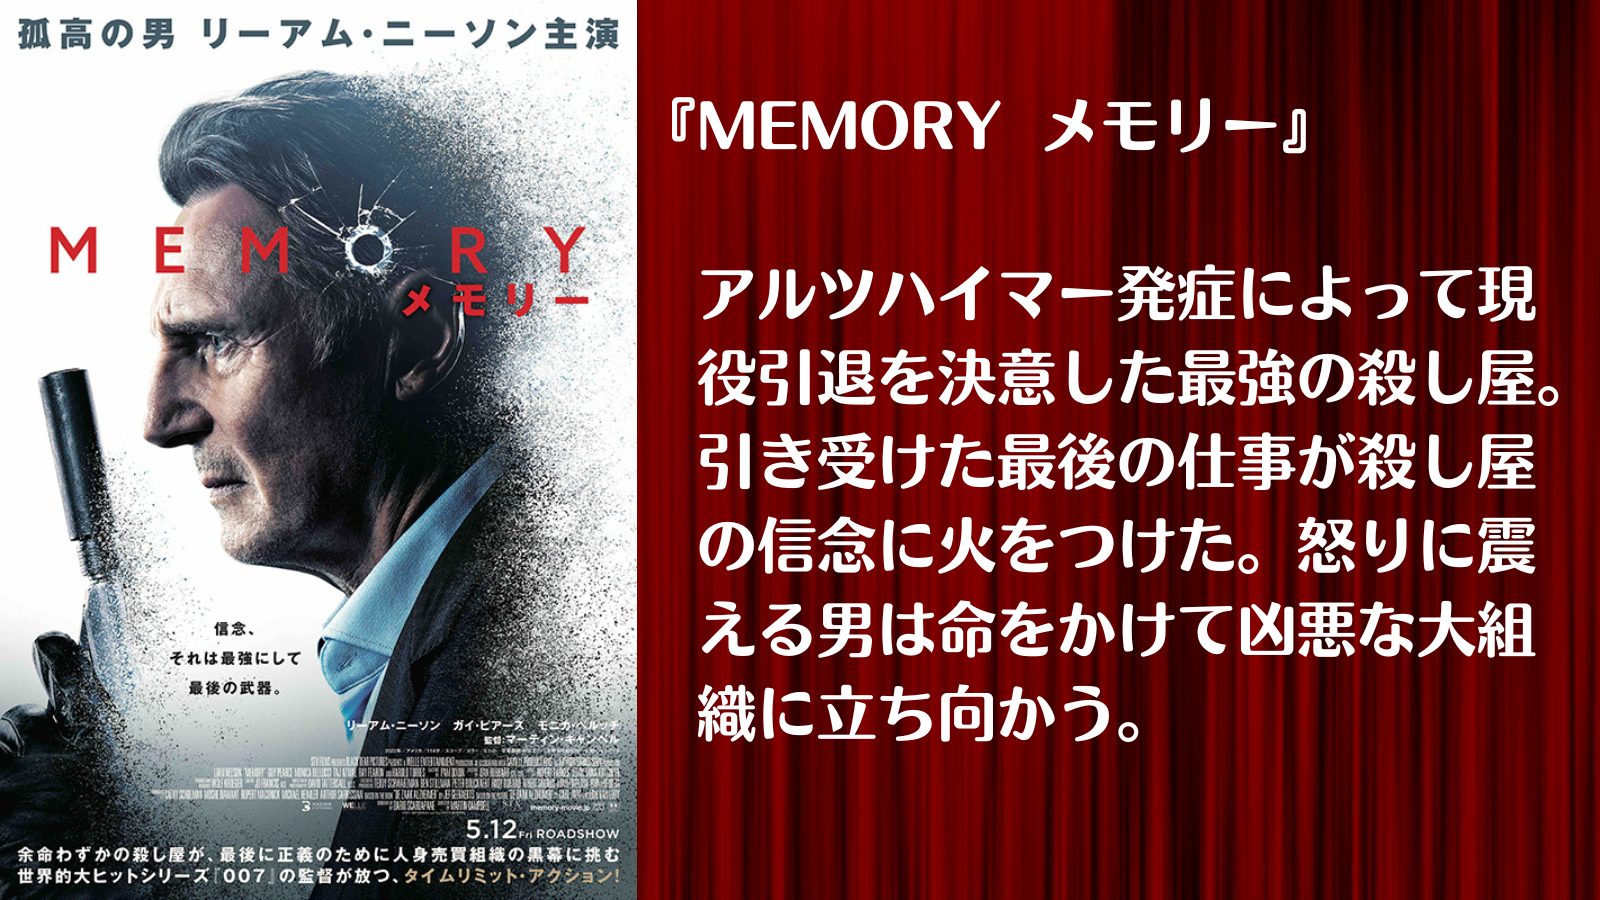 アルツハイマー発症によって引退を決意した殺し屋の最後の仕事『MEMORY メモリー』｜１人で気軽に映画を楽しむ会